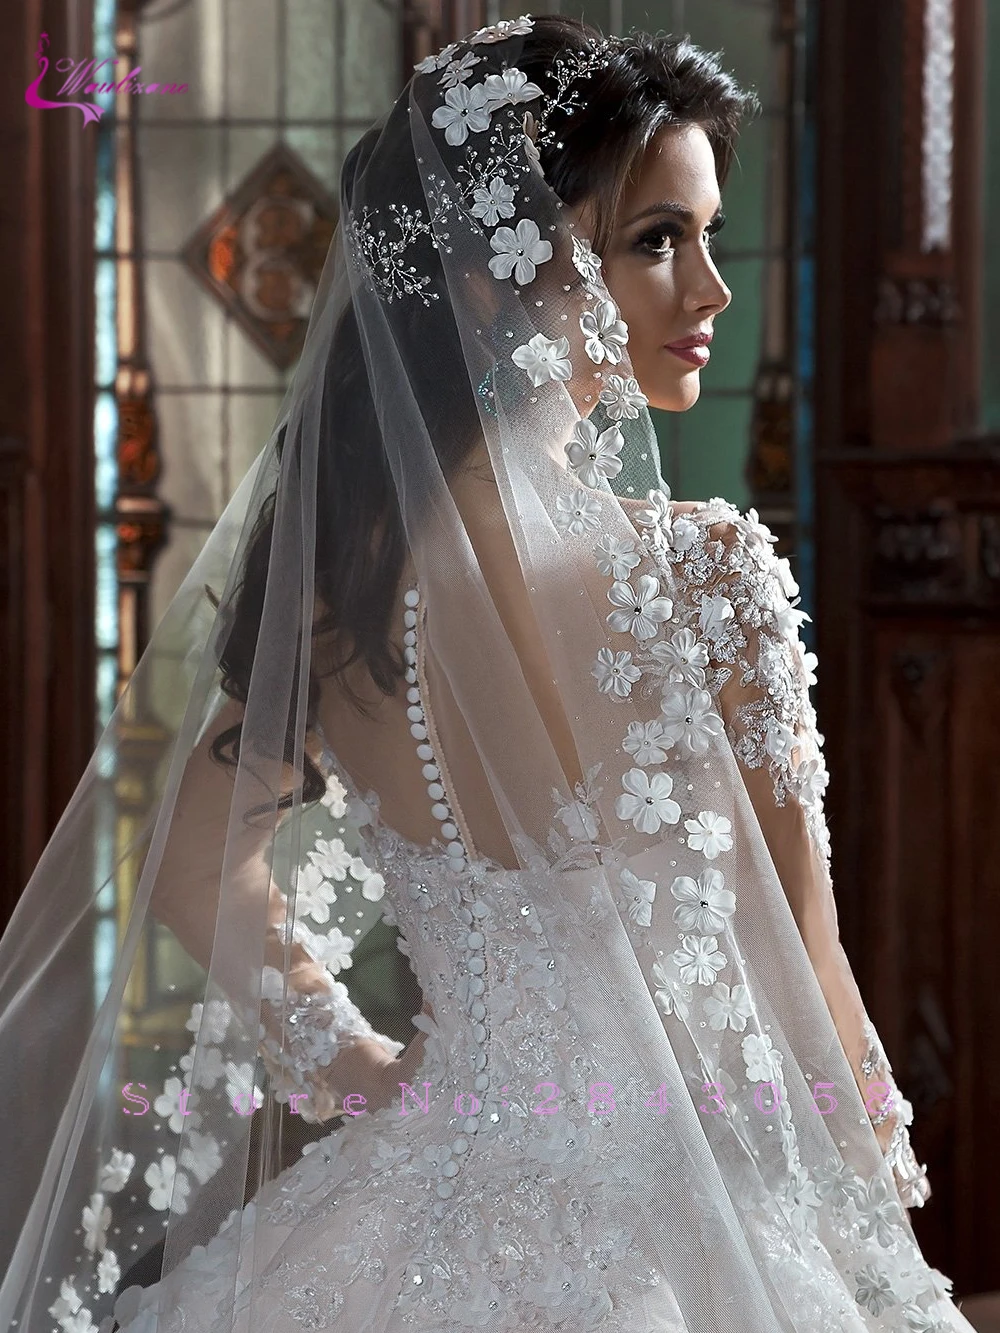 Waulizane бальное платье с длинным рукавом свадебное платье со шлейфом Элегантный 3D цветы и аппликации Принцесса свадебное платье